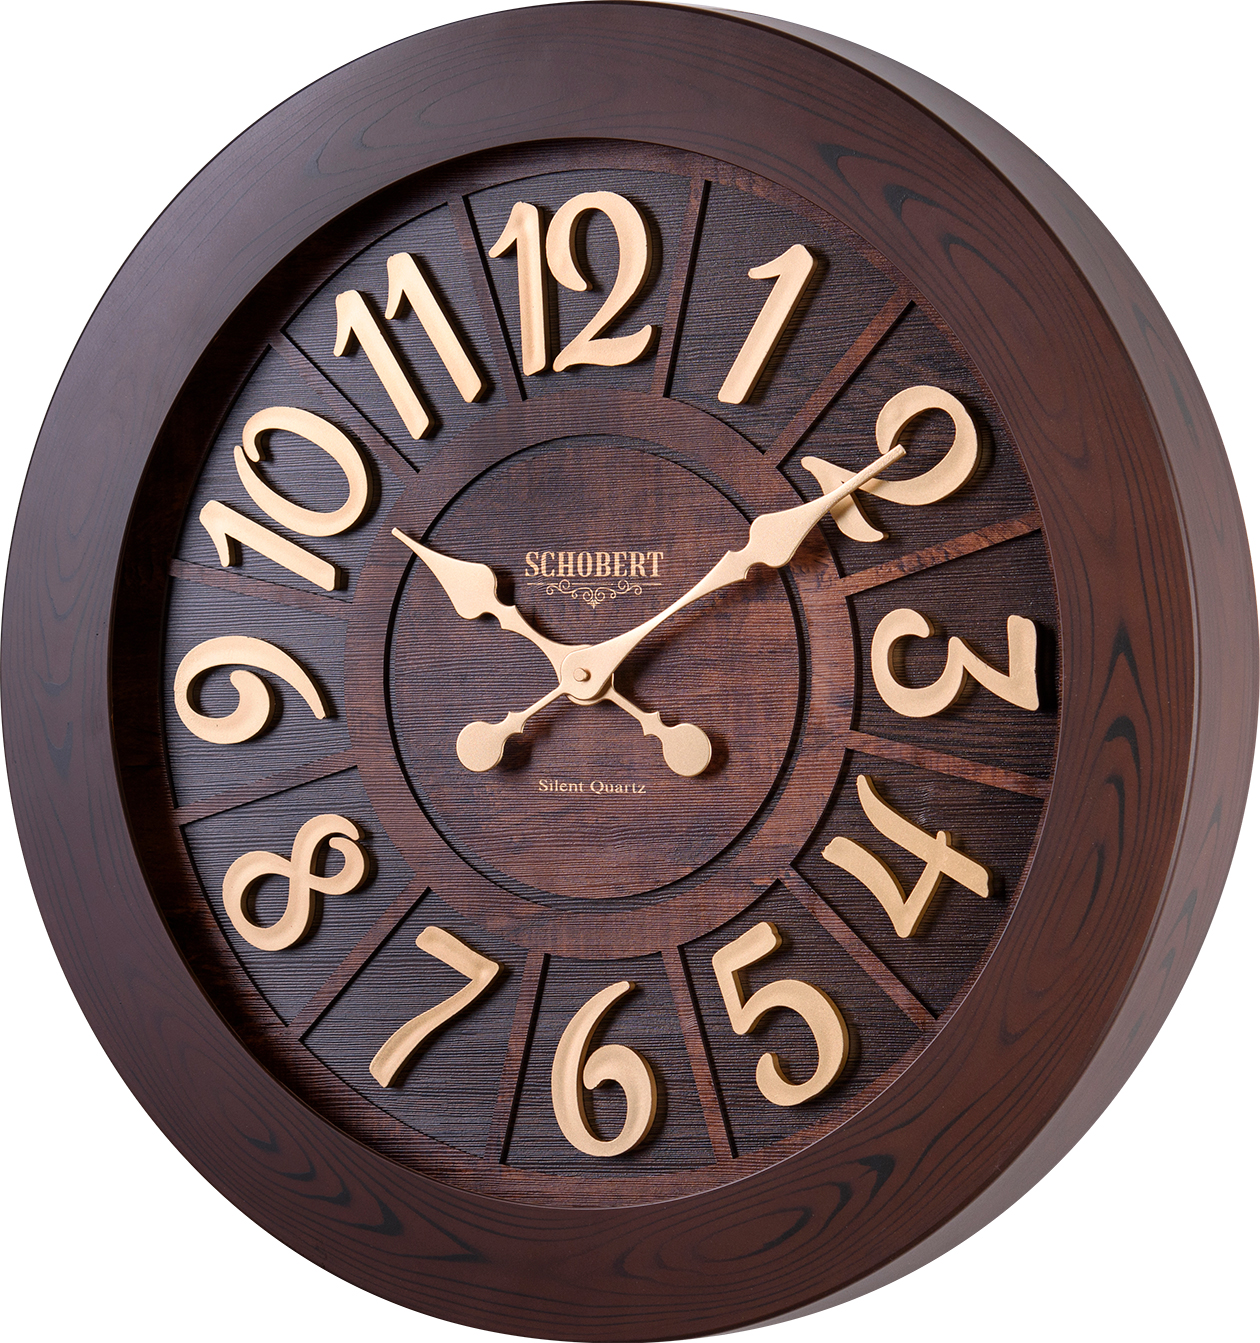 ساعت دیواری شوبرت مدل پارسیلا - 5217